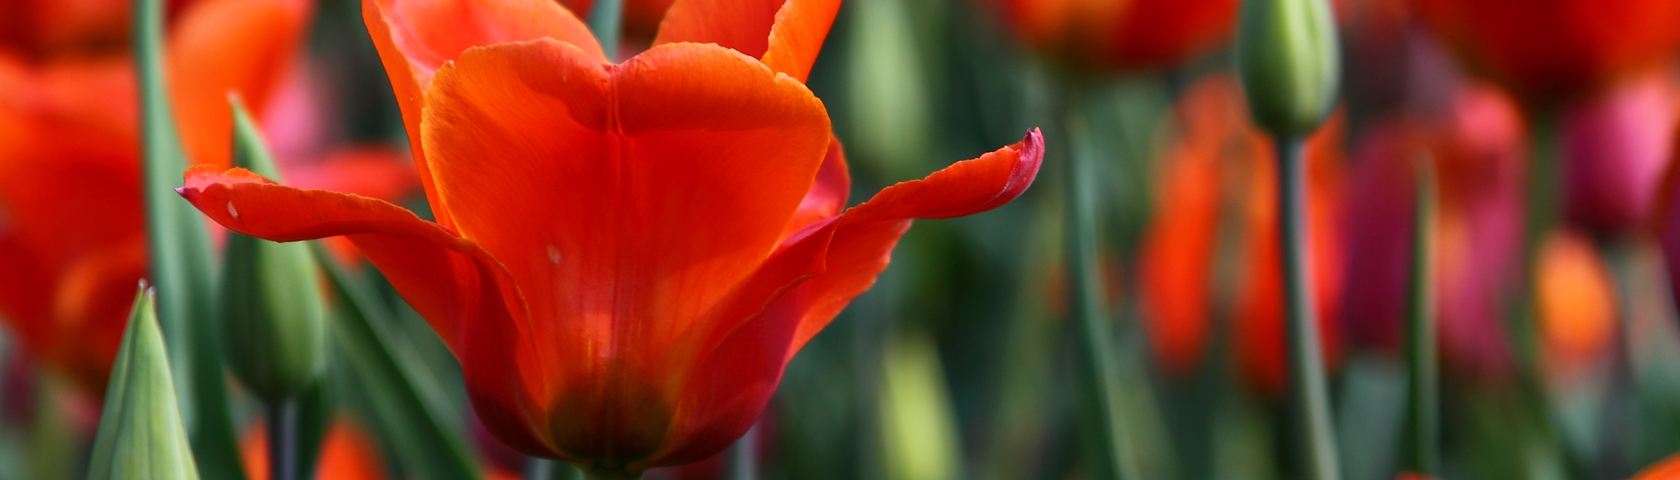 Summer Tulips